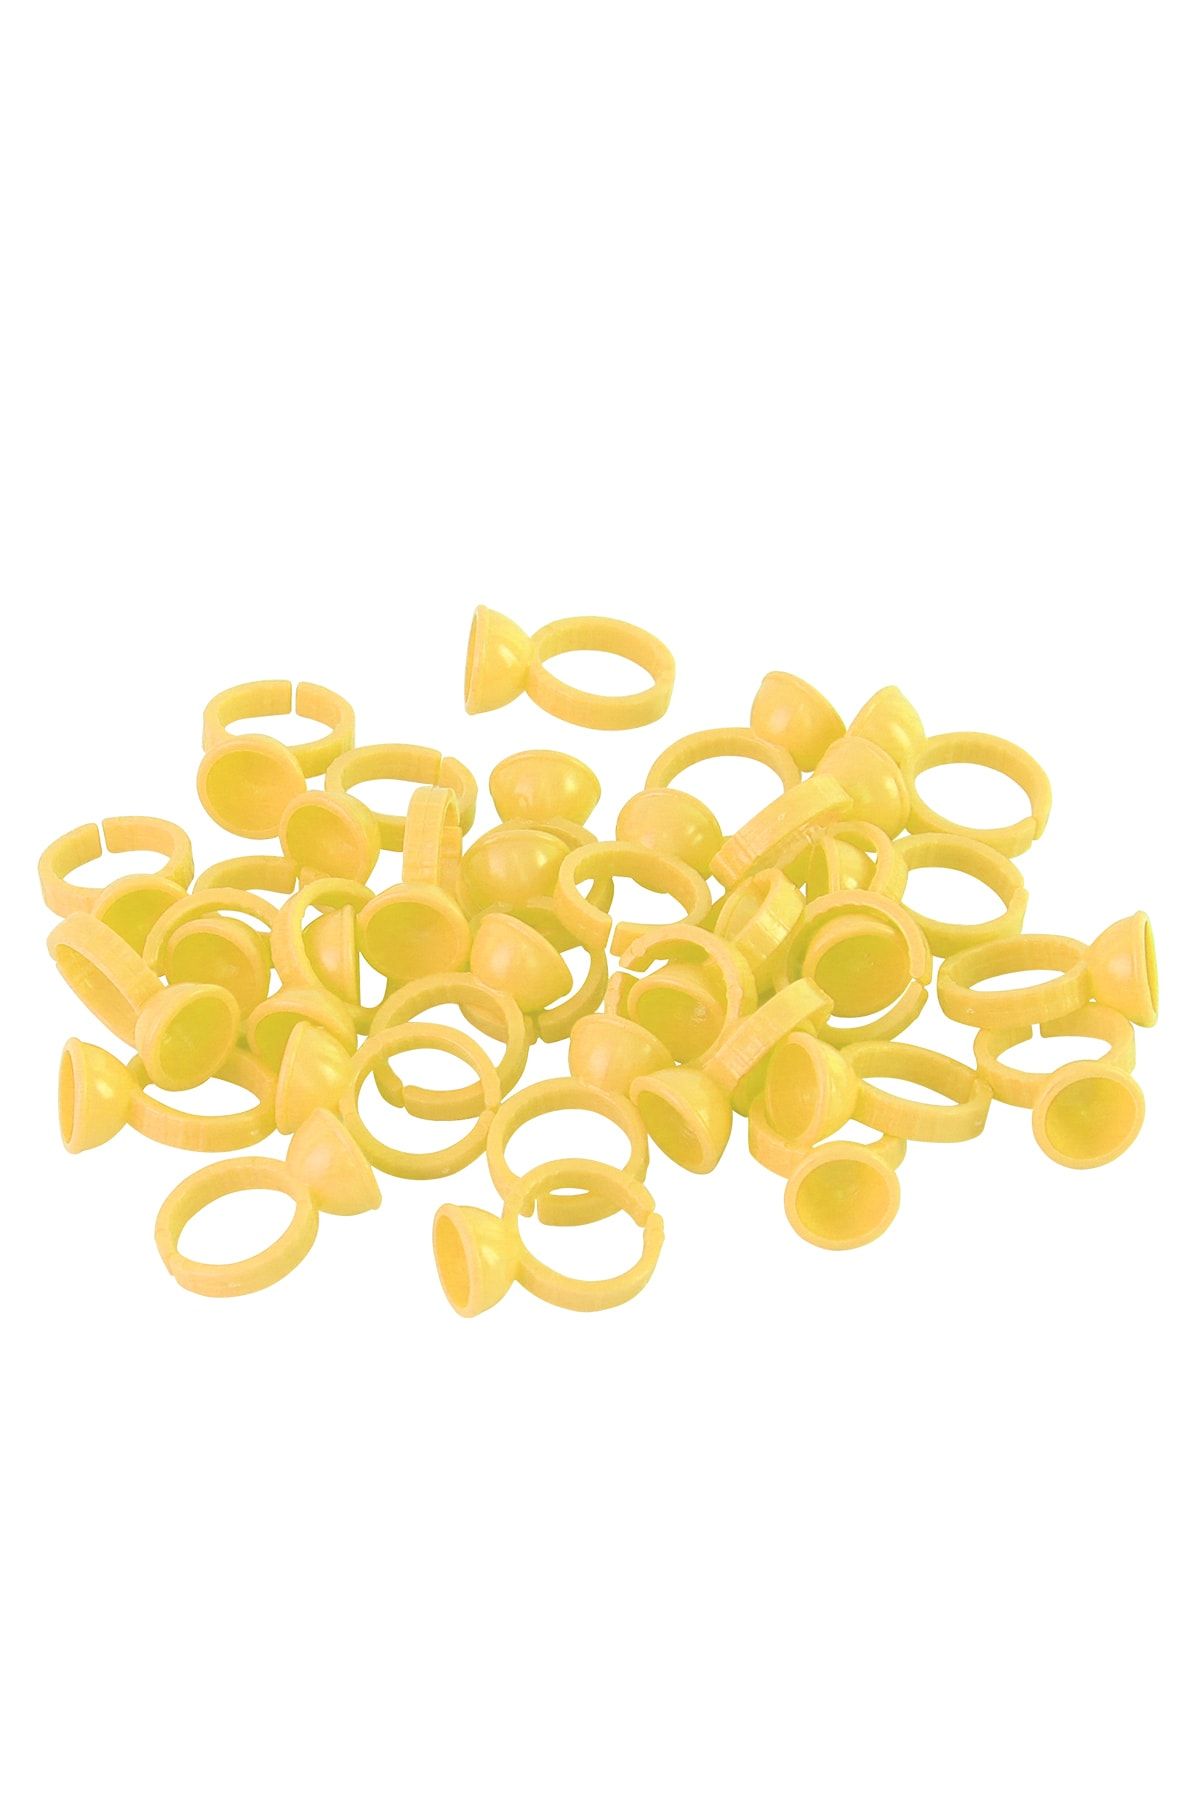 GABBA PERMANENT MAKE-UP 100 Adet Sarı Microblading Kalıcı Makyaj Ve Ipek Kirpik Boya Koyma Potu Yüzük